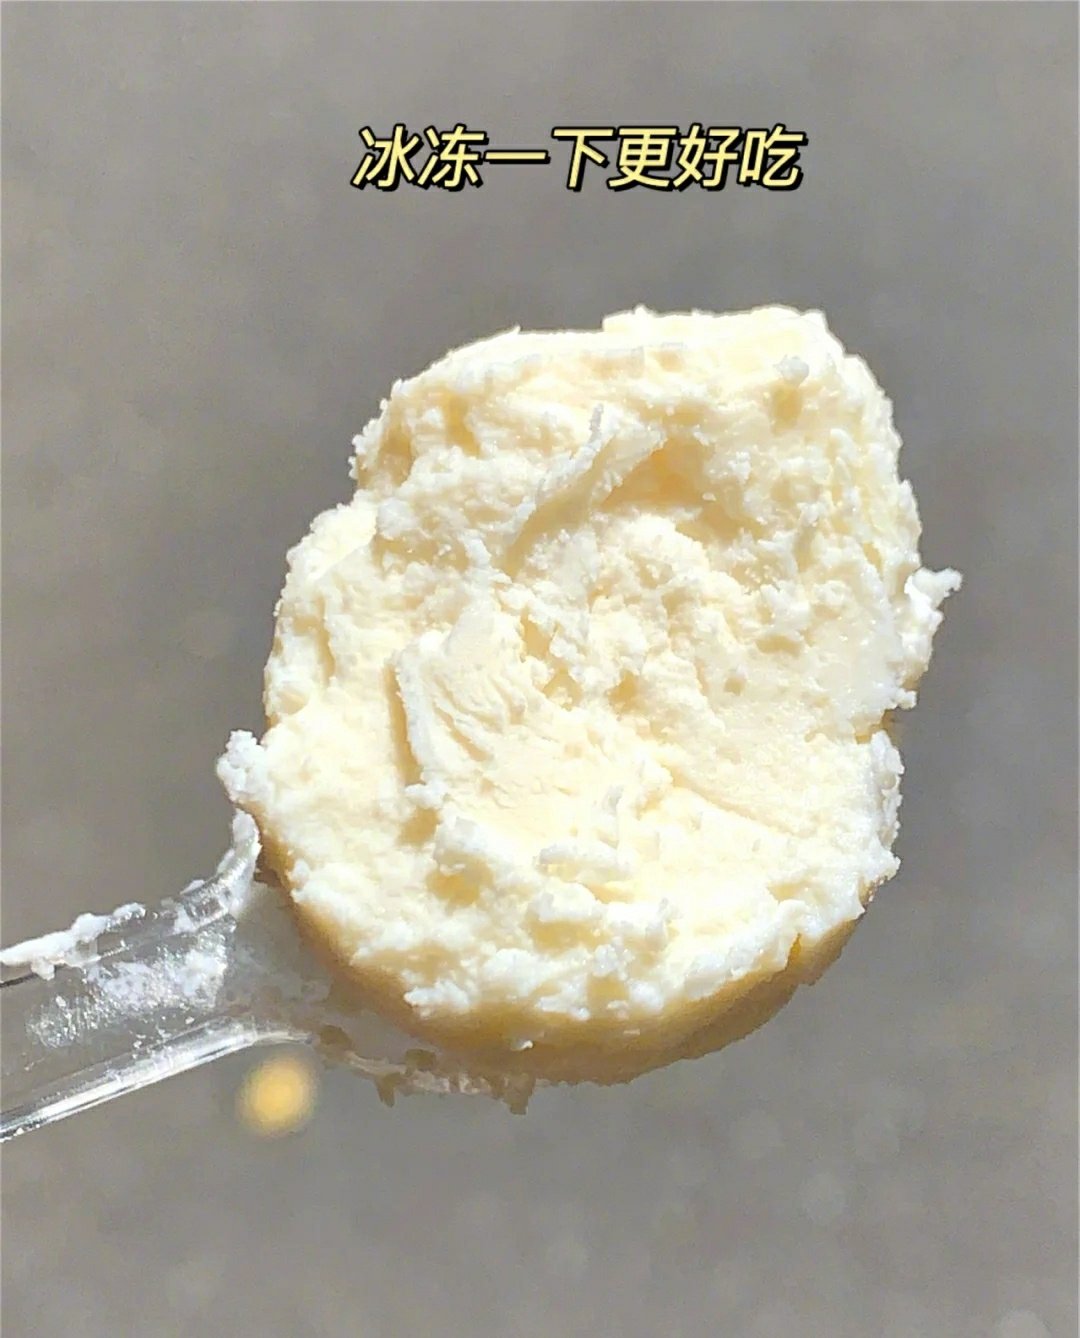 西域皇后奶疙瘩新疆手工奶疙瘩奶酪酸奶嚼着吃500g/袋 包邮-阿里巴巴